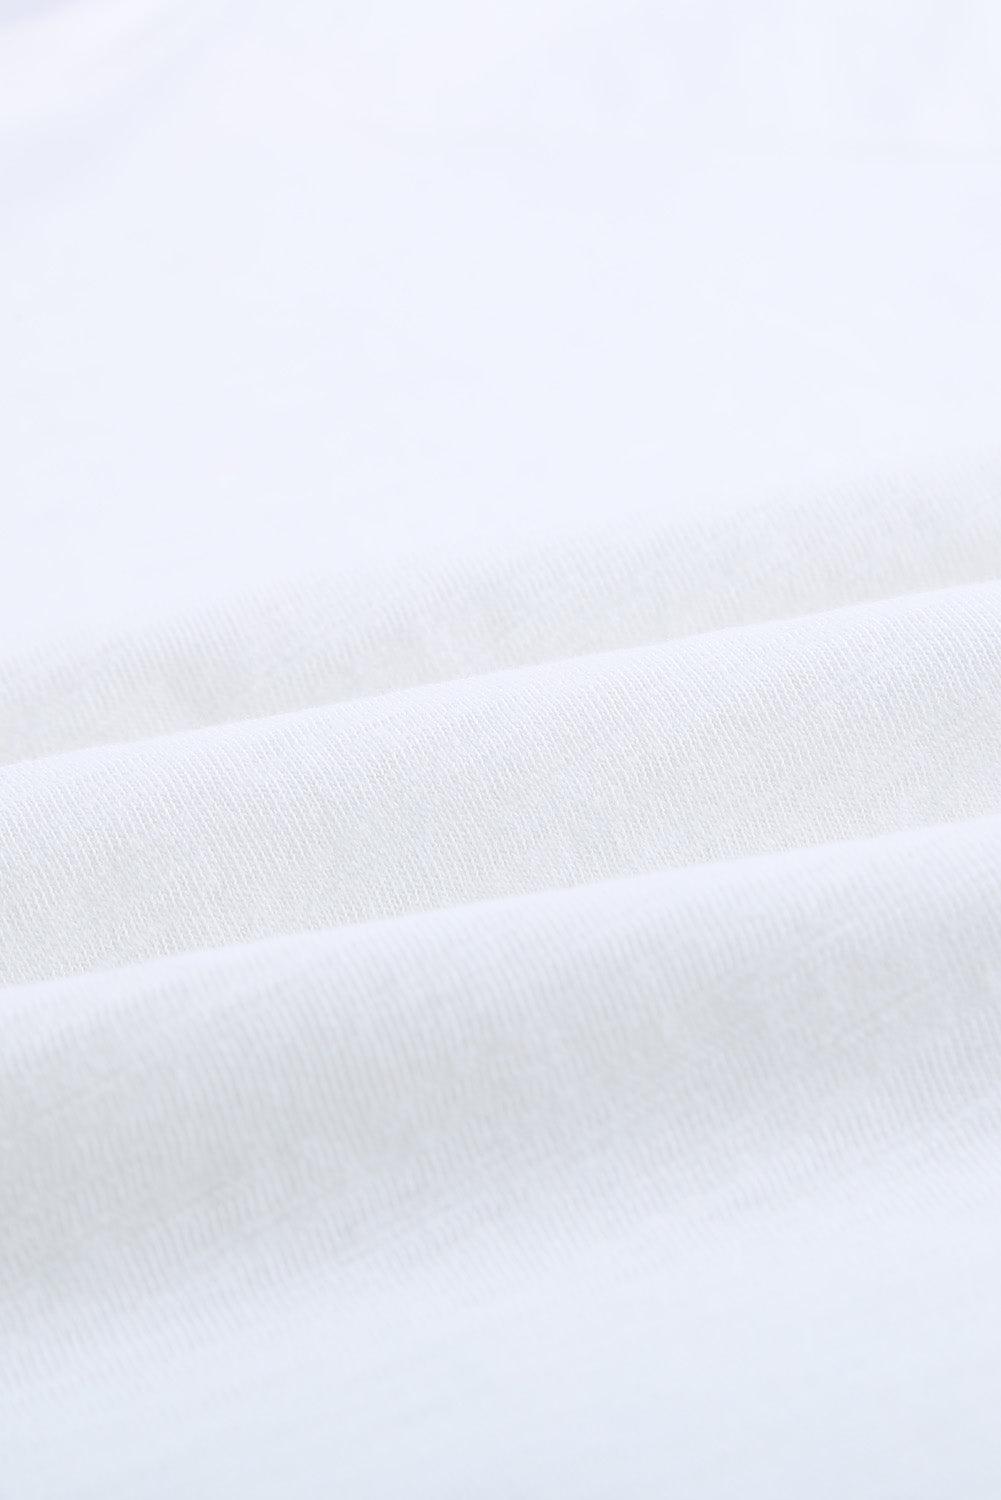 Orange V Neck Short Sleeves Cotton Blend Tee with Front Pocket and Side Slits - L & M Kee, LLC